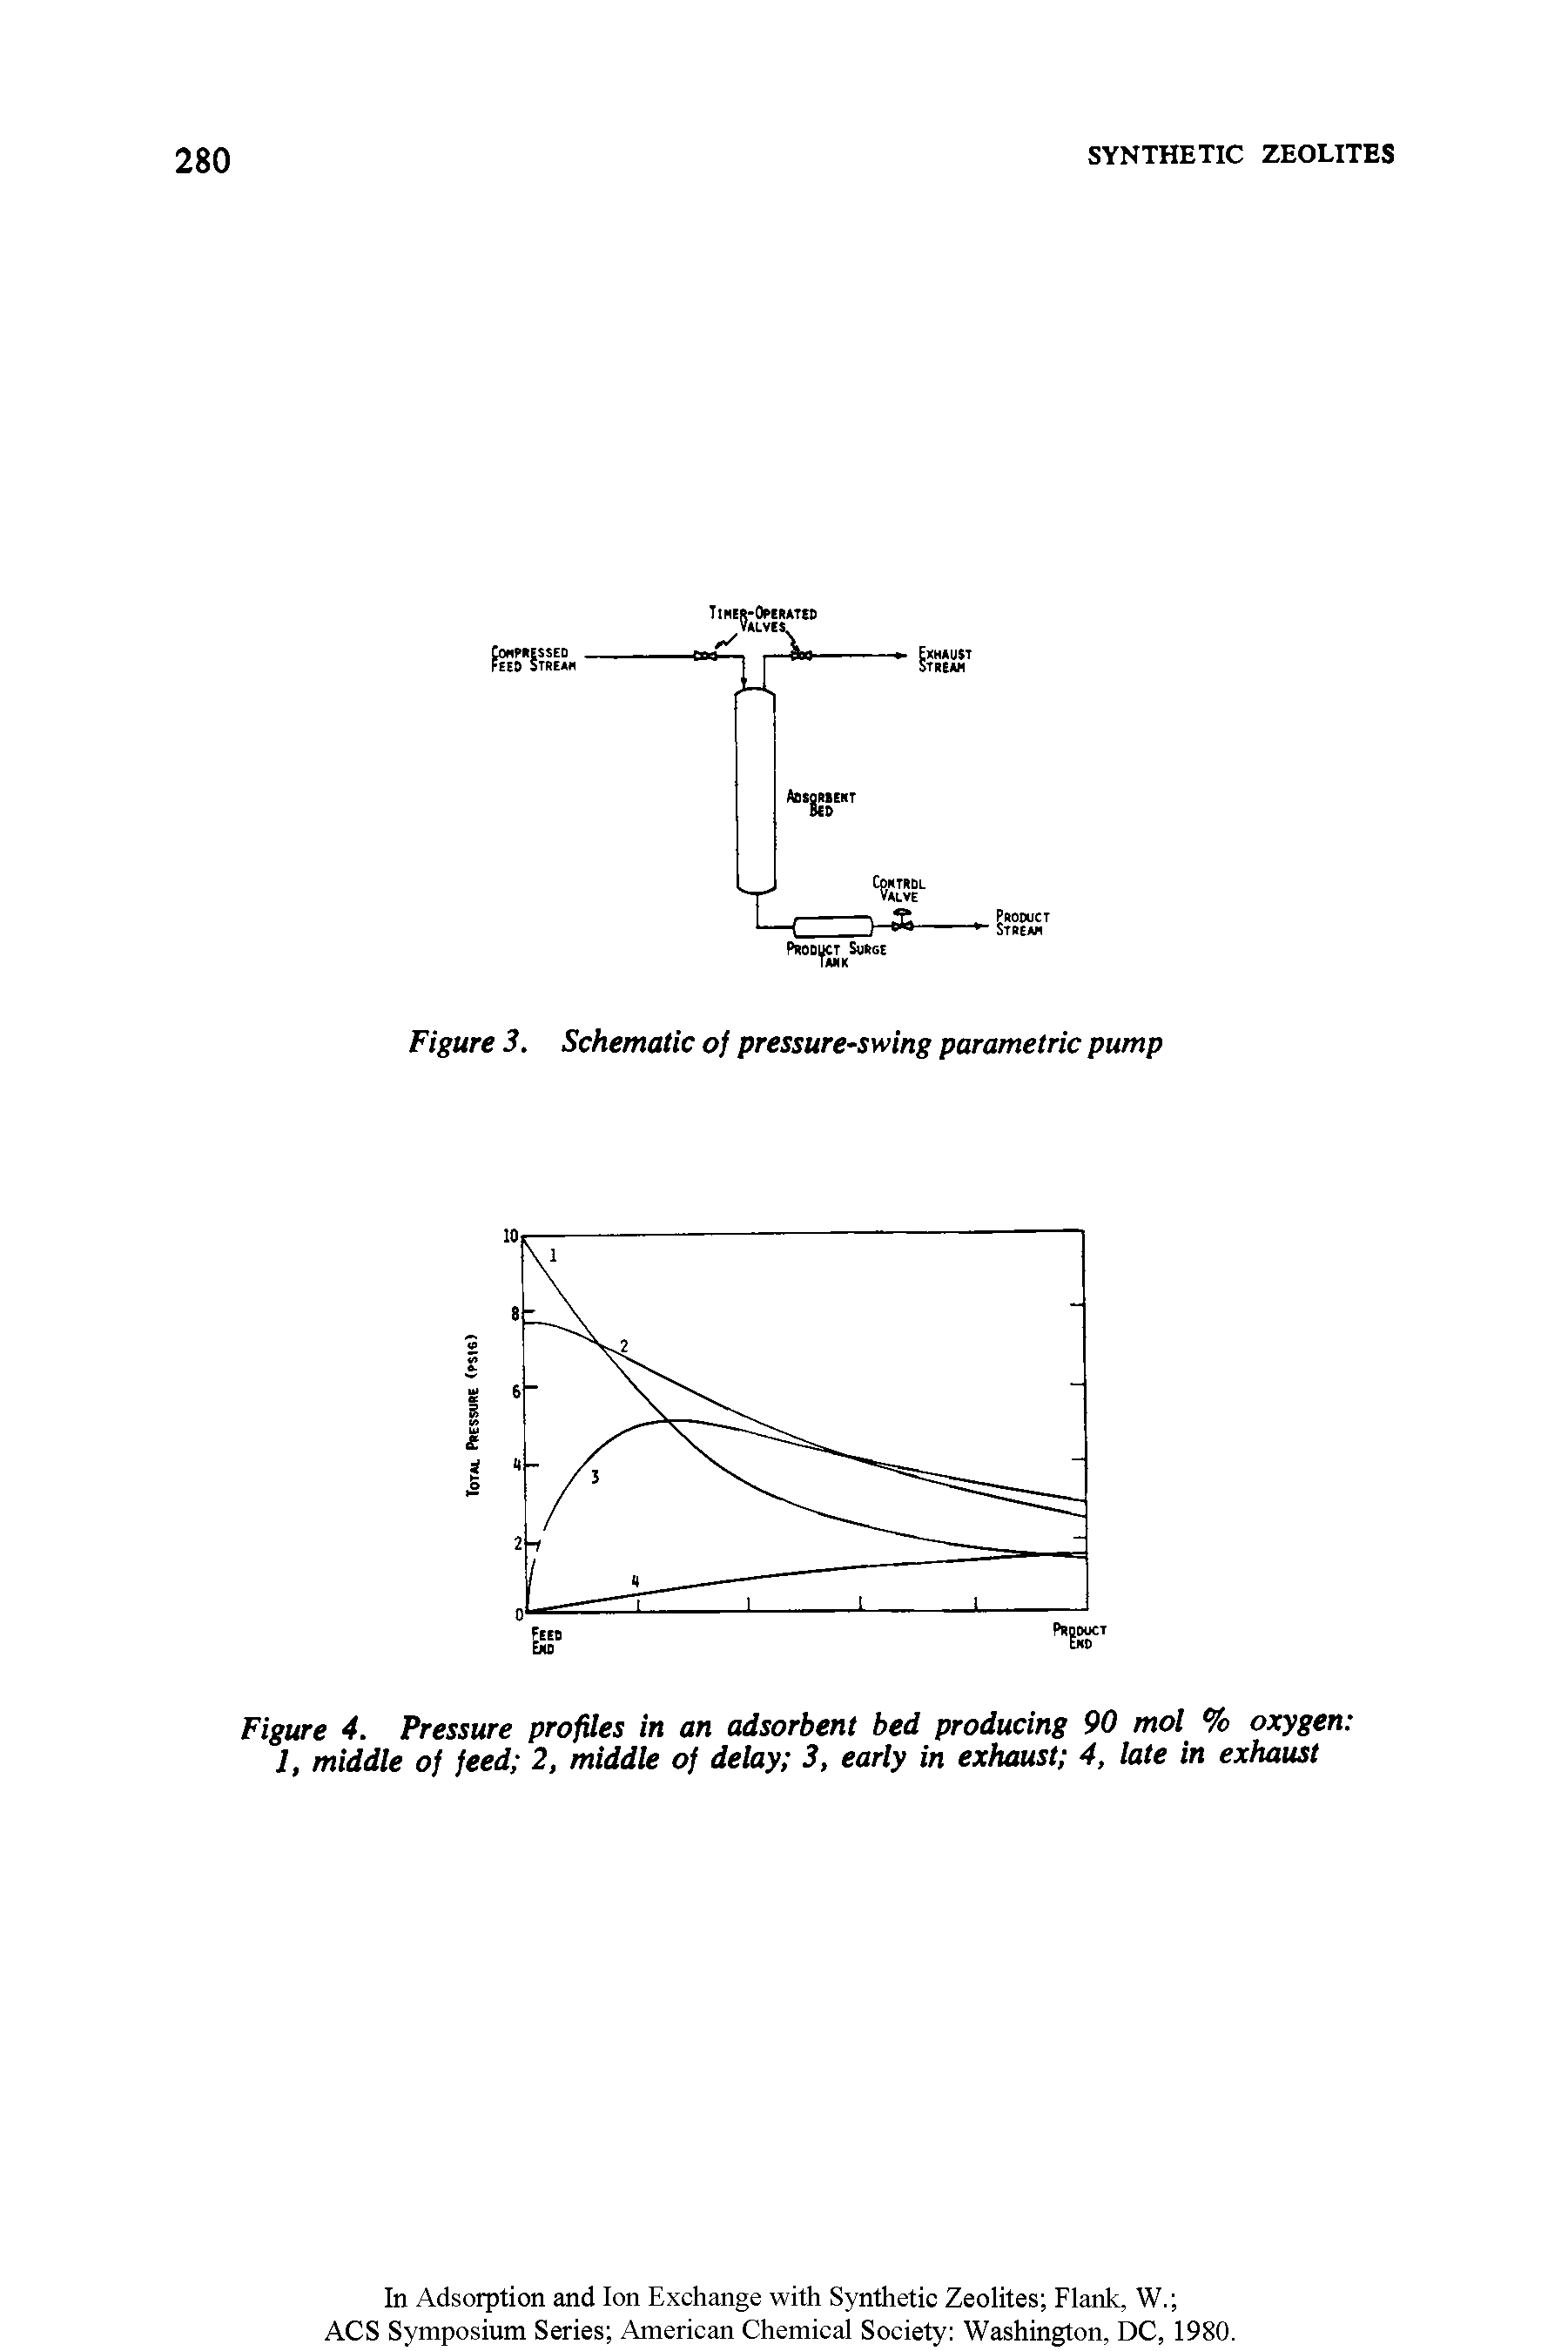 Figure 3. Schematic of pressure-swing parametric pump...